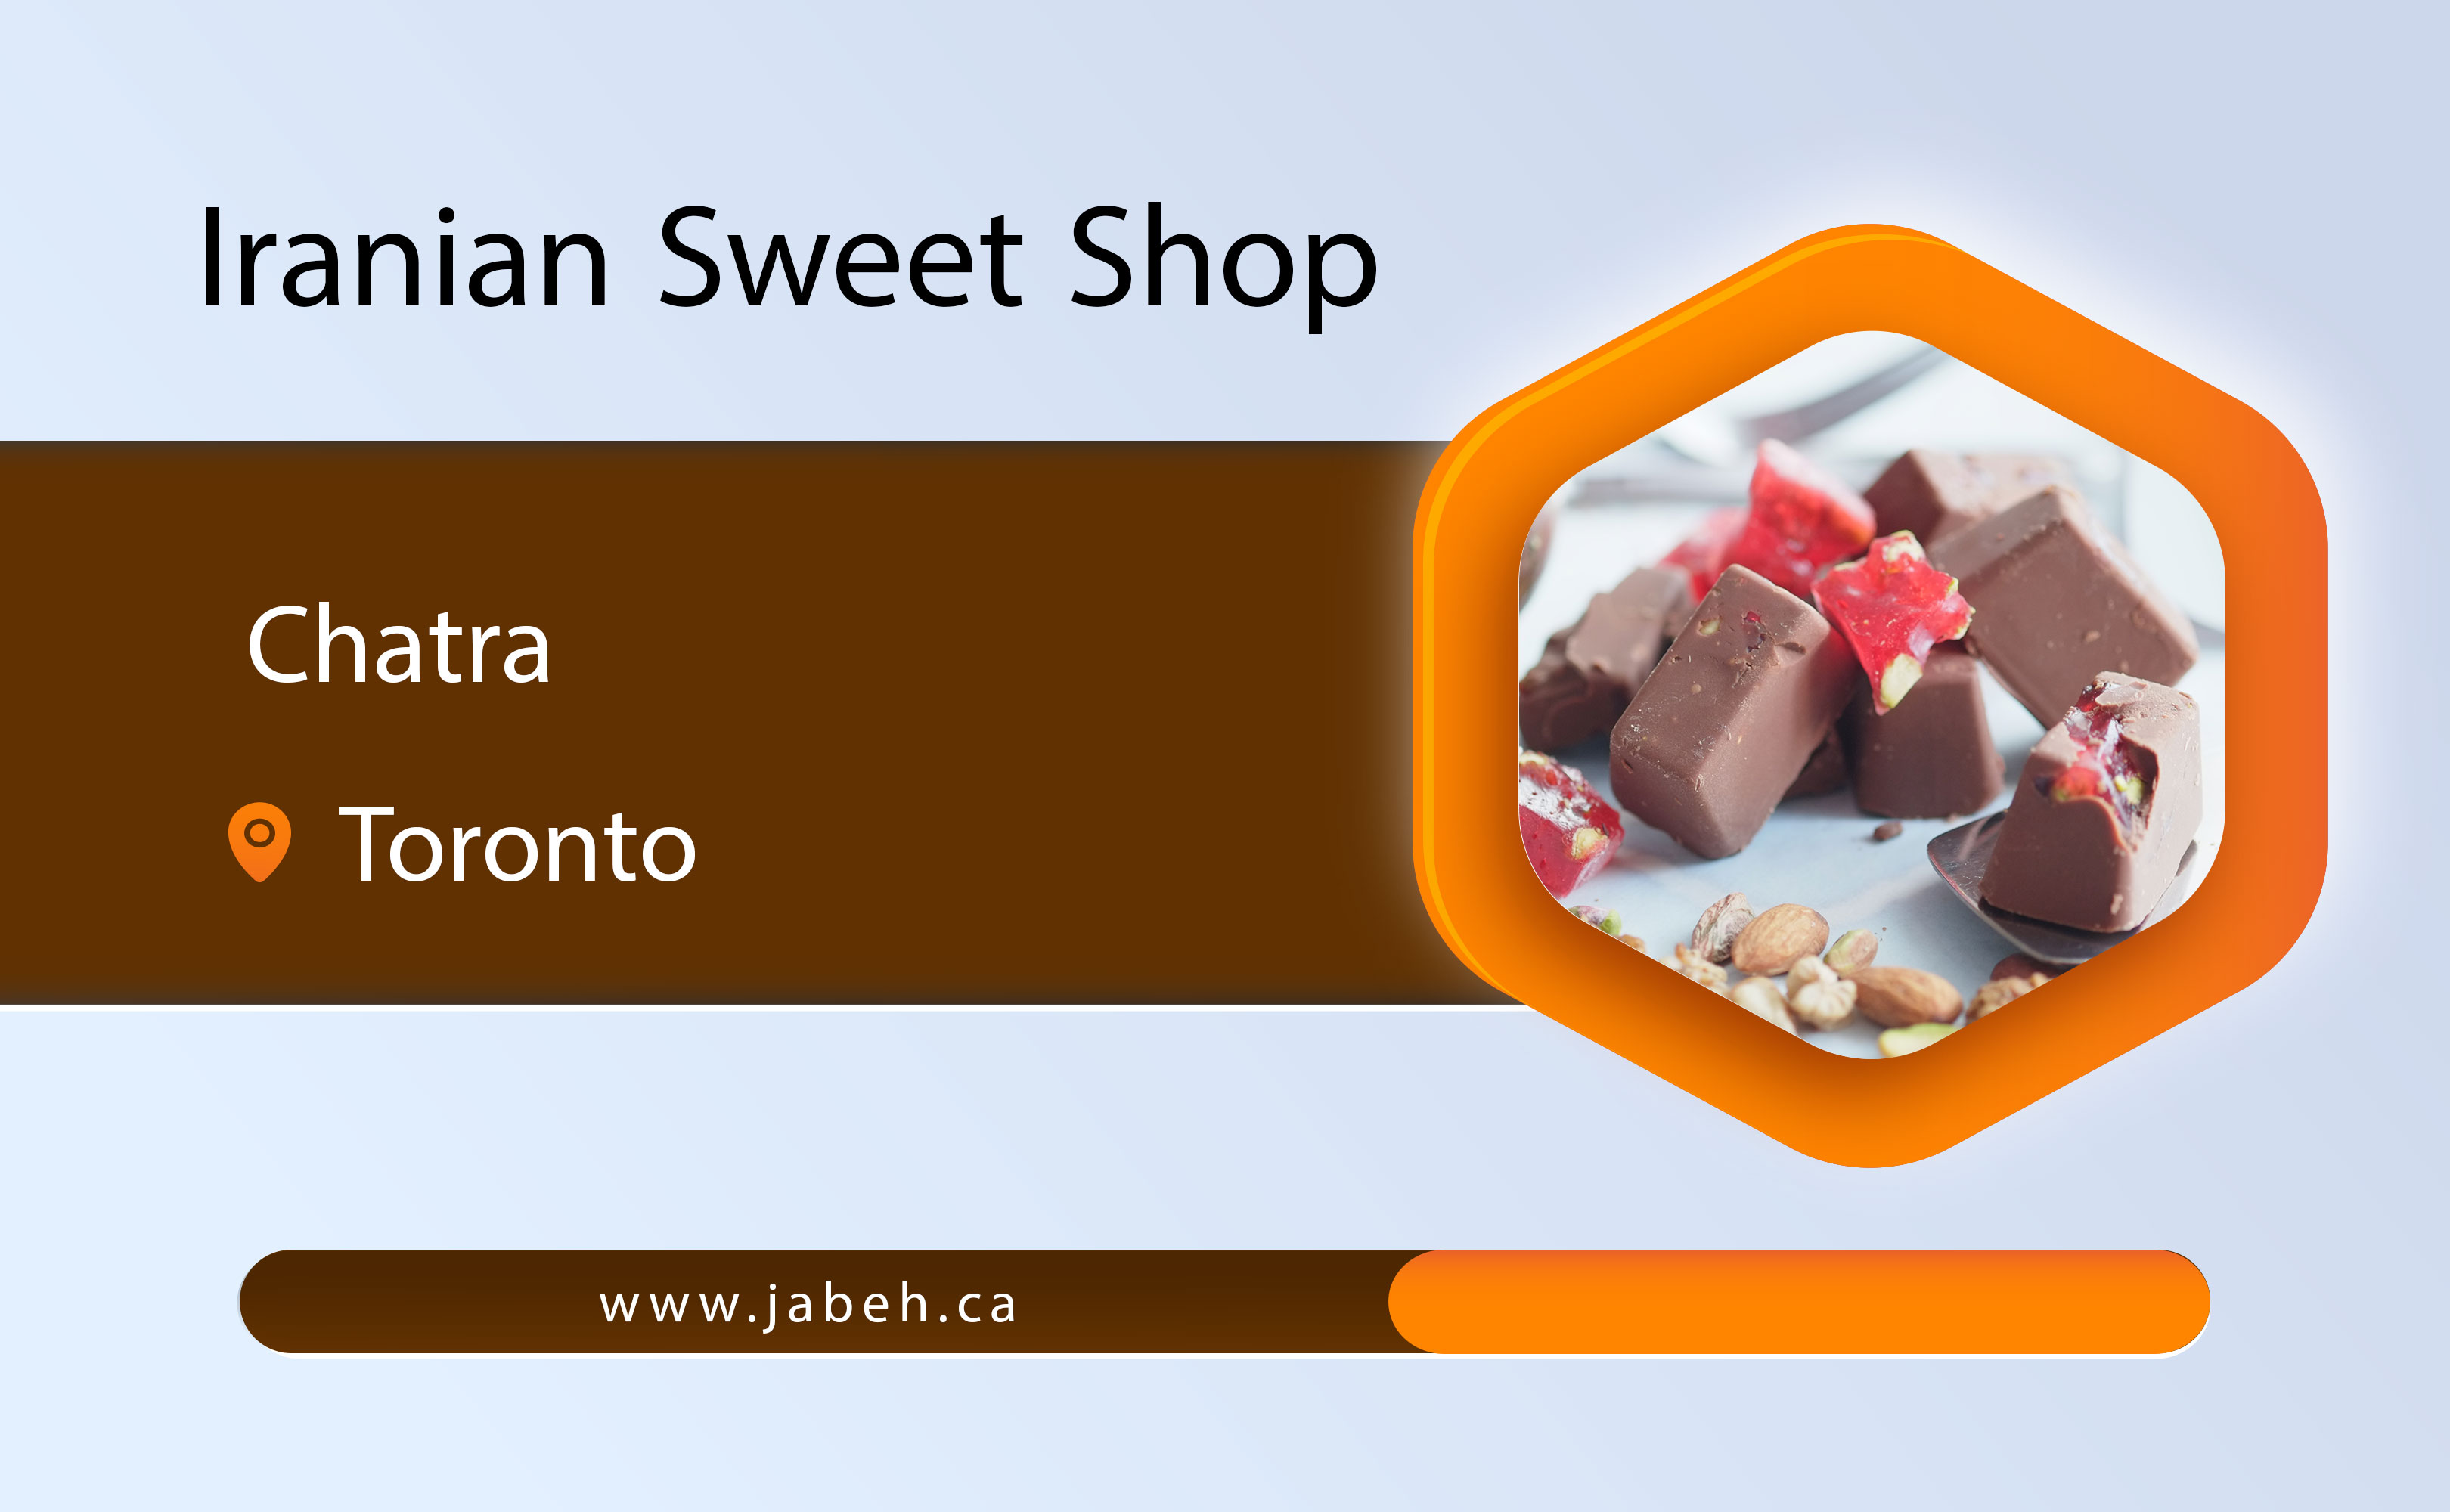 Chetra Iranian sweet shop in Toronto